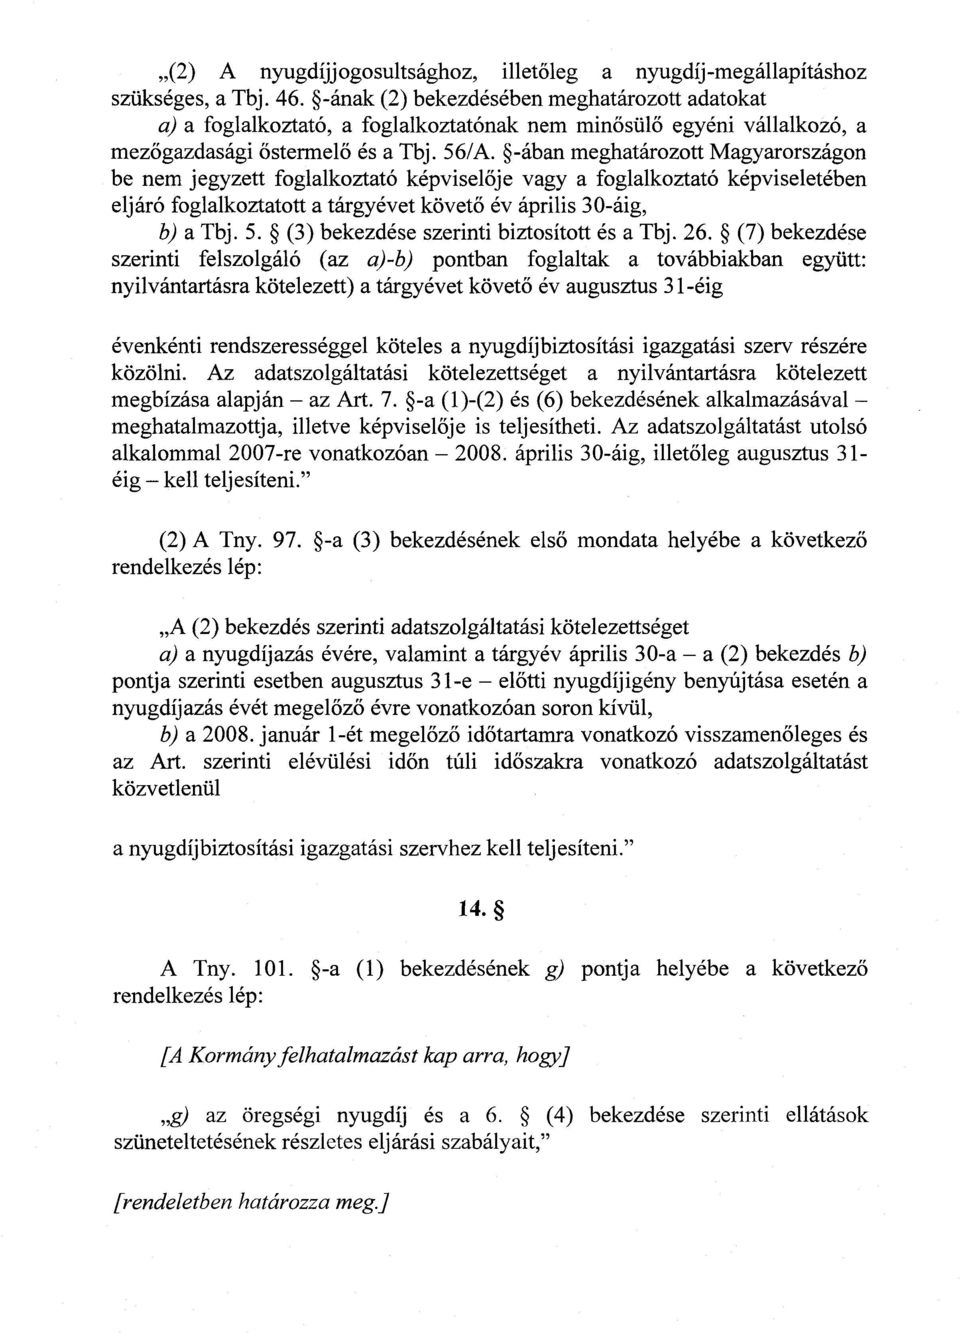 -ában meghatározott Magyarországon be nem jegyzett foglalkoztató képviselője vagy a foglalkoztató képviseletében eljáró foglalkoztatott a tárgyévet követő év április 30-áig, b) a Tbj. 5.